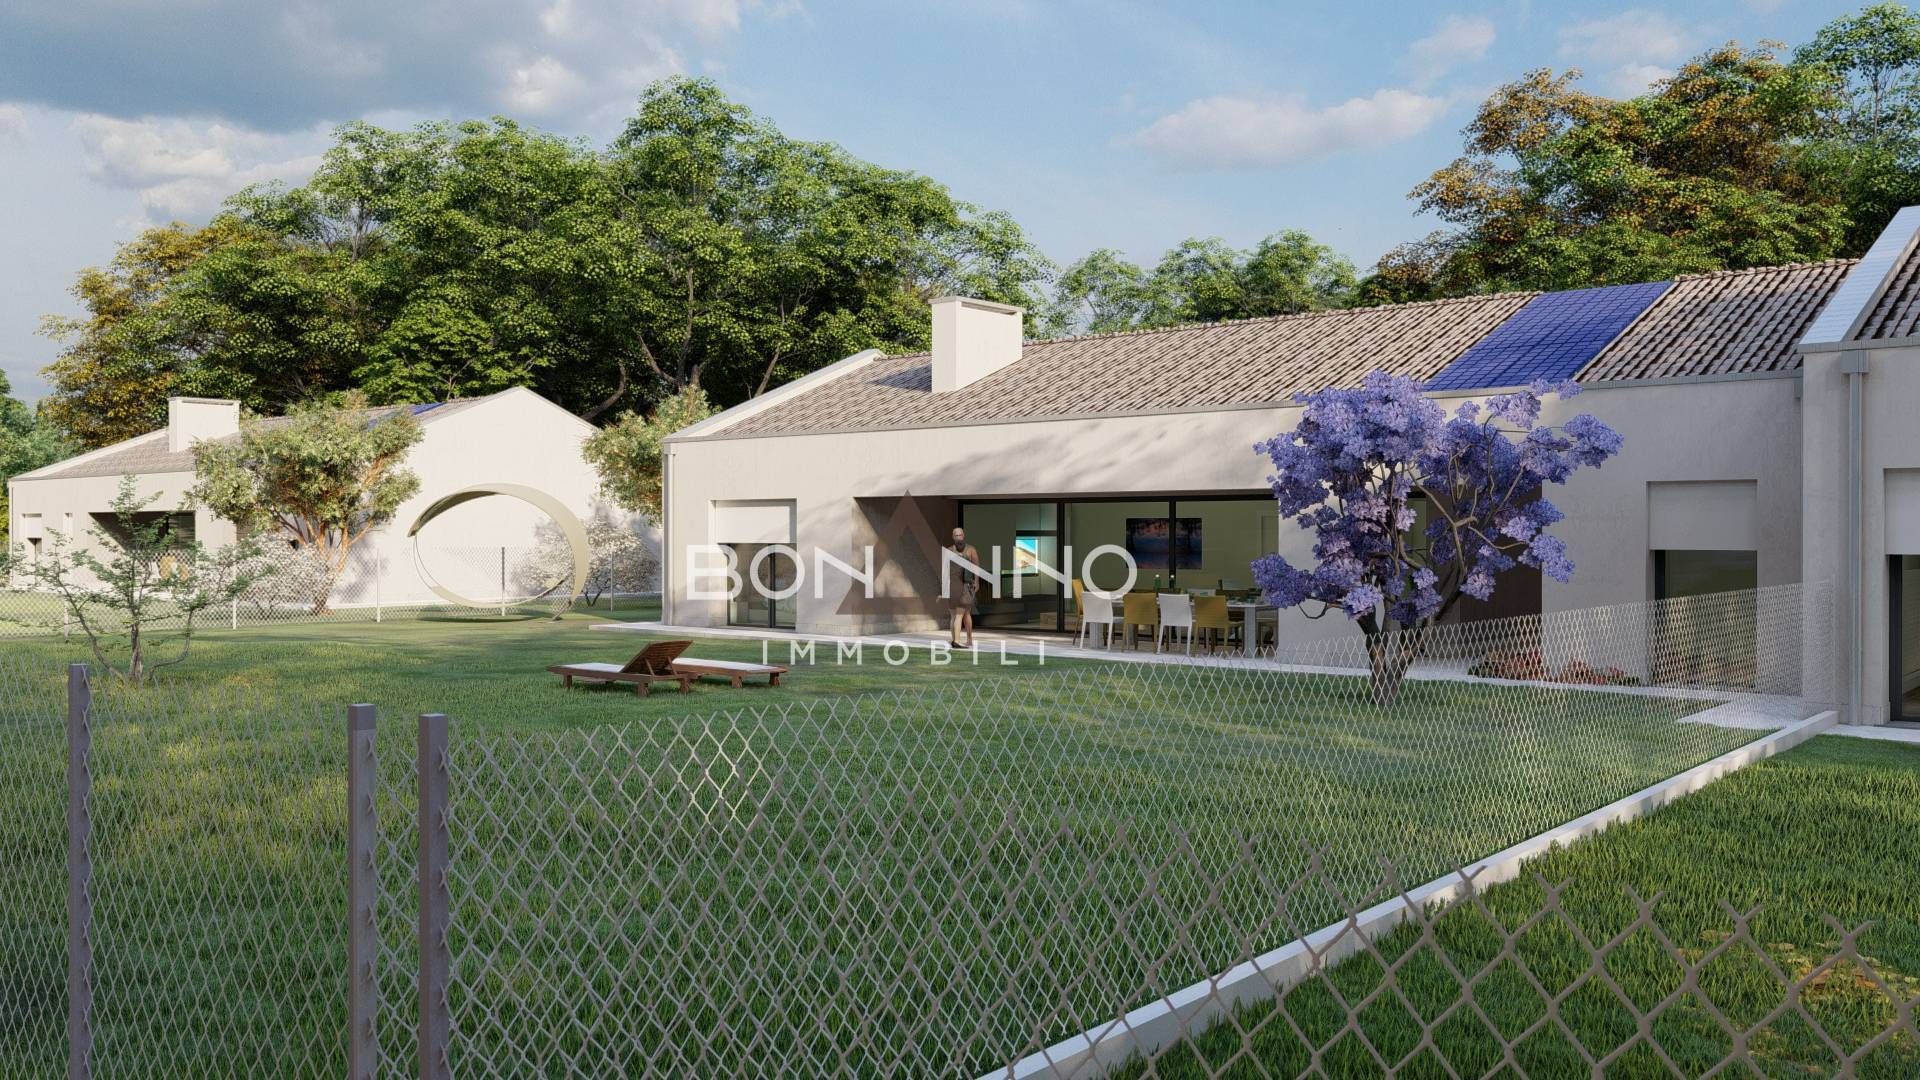 Villa in vendita a Silea, 7 locali, prezzo € 430.000 | PortaleAgenzieImmobiliari.it